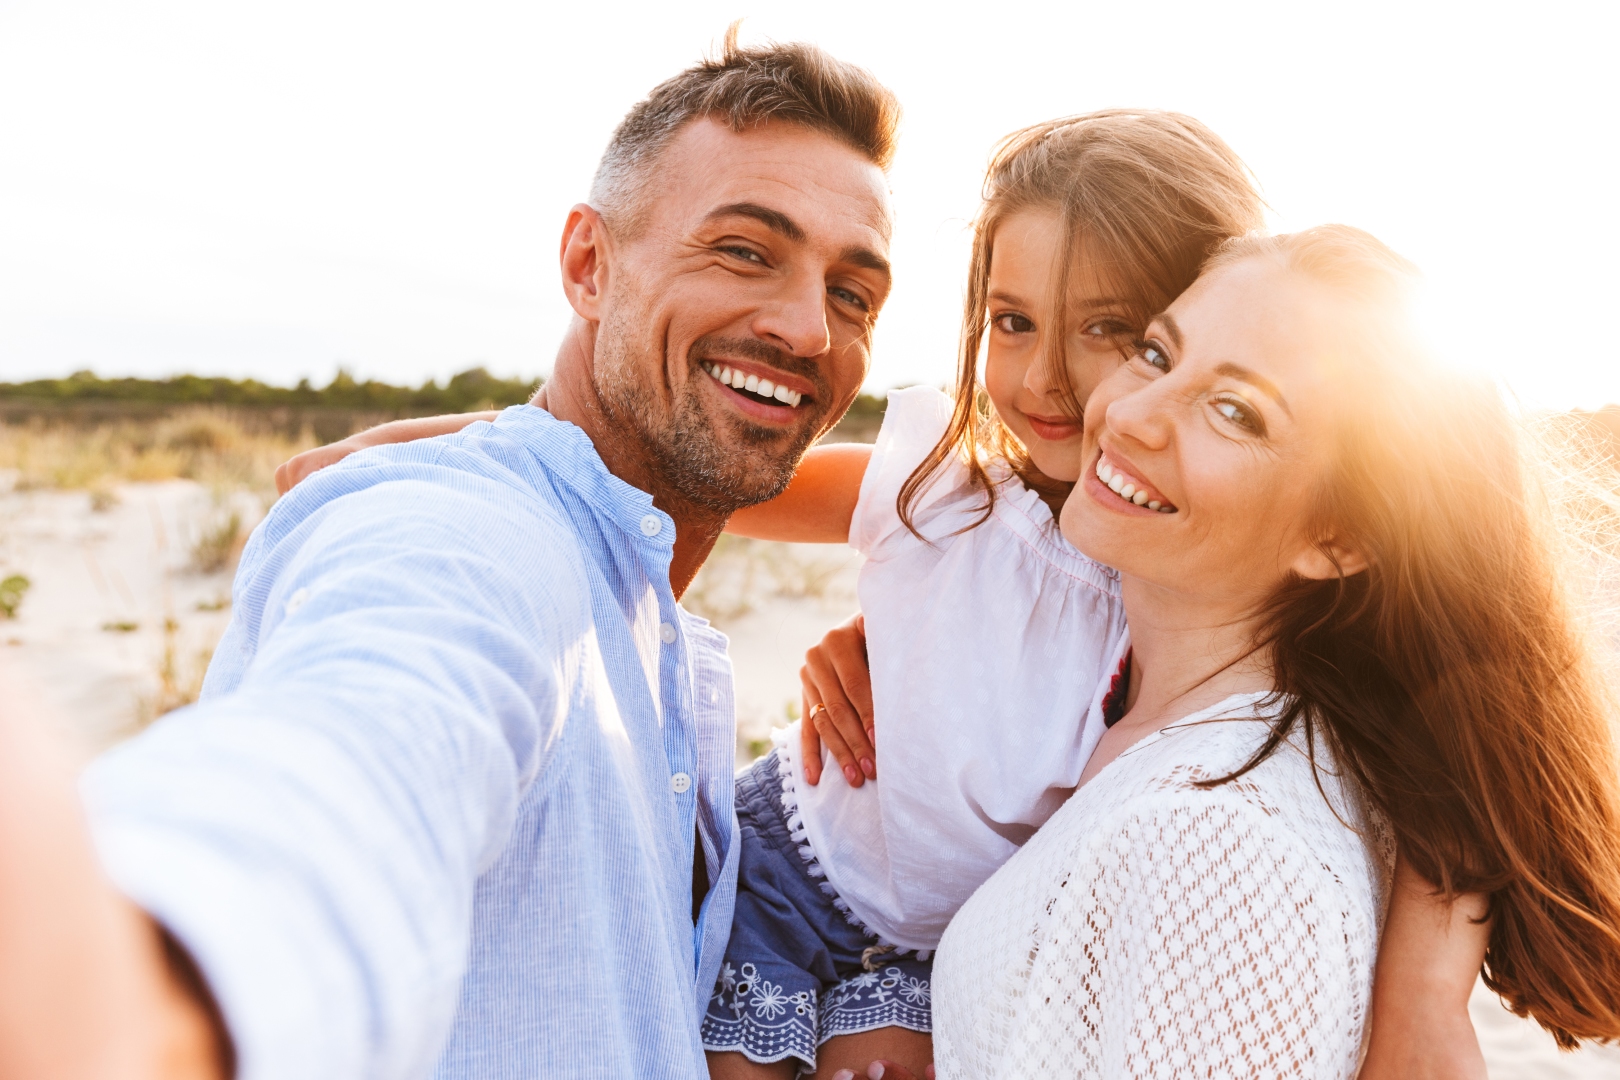 szczęśliwa, uśmiechnięta rodzina spędza czas na plaży i robi sobie zdjęcie selfie